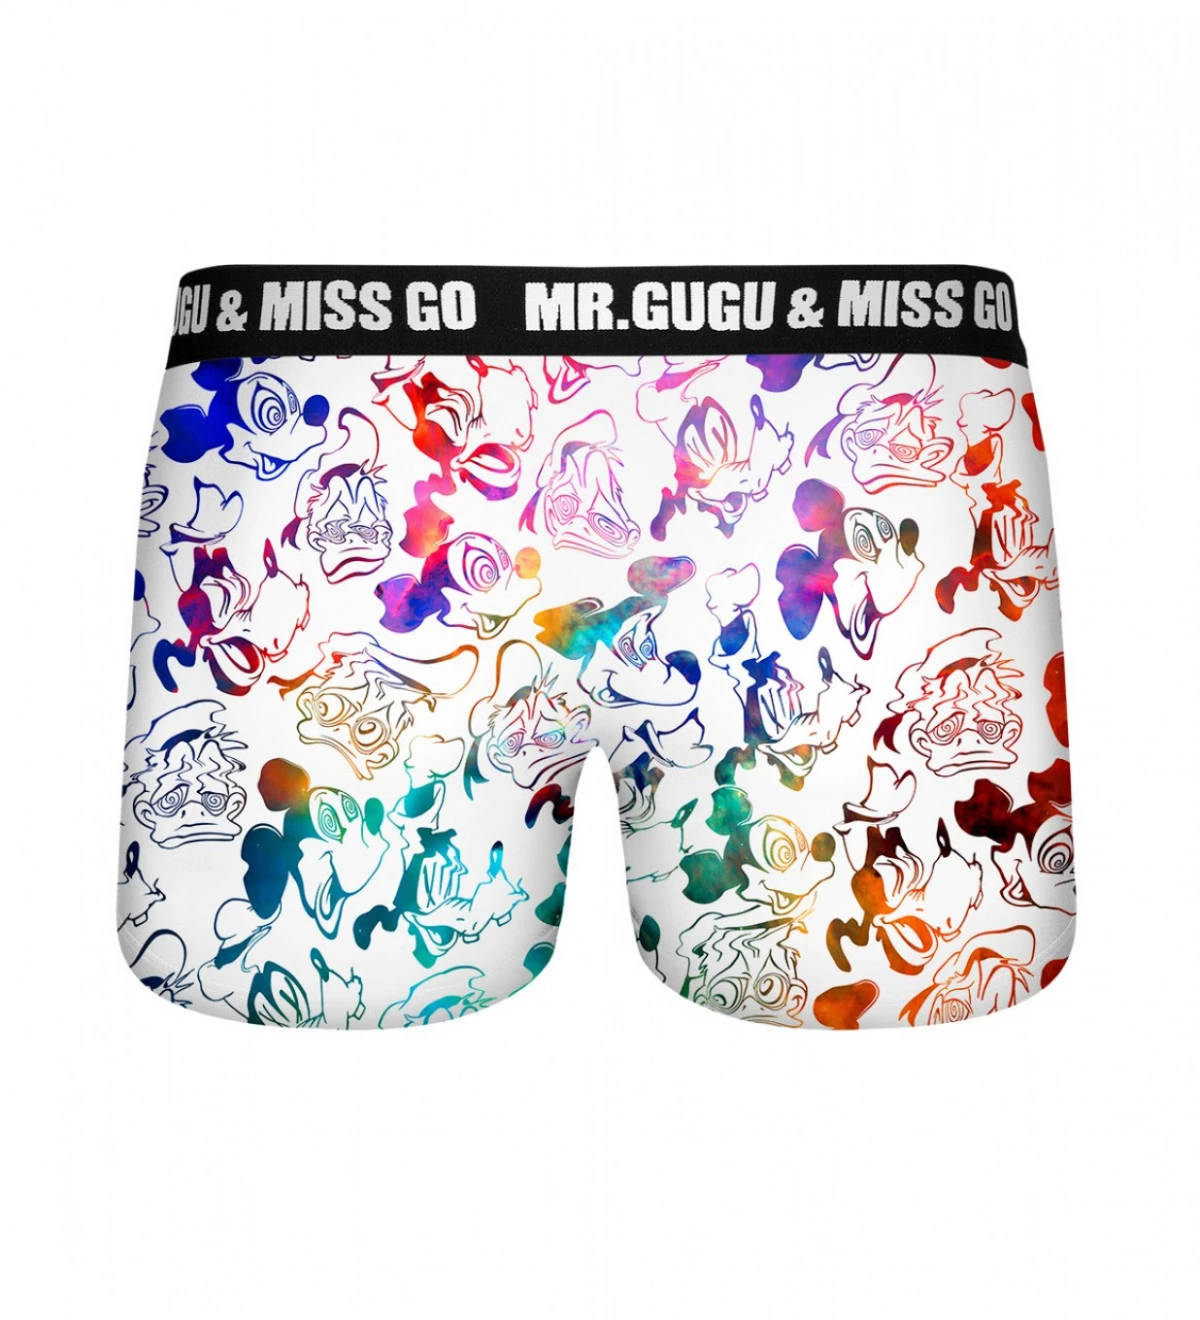 Rubber duck Underwear - Mr. Gugu & Miss Go